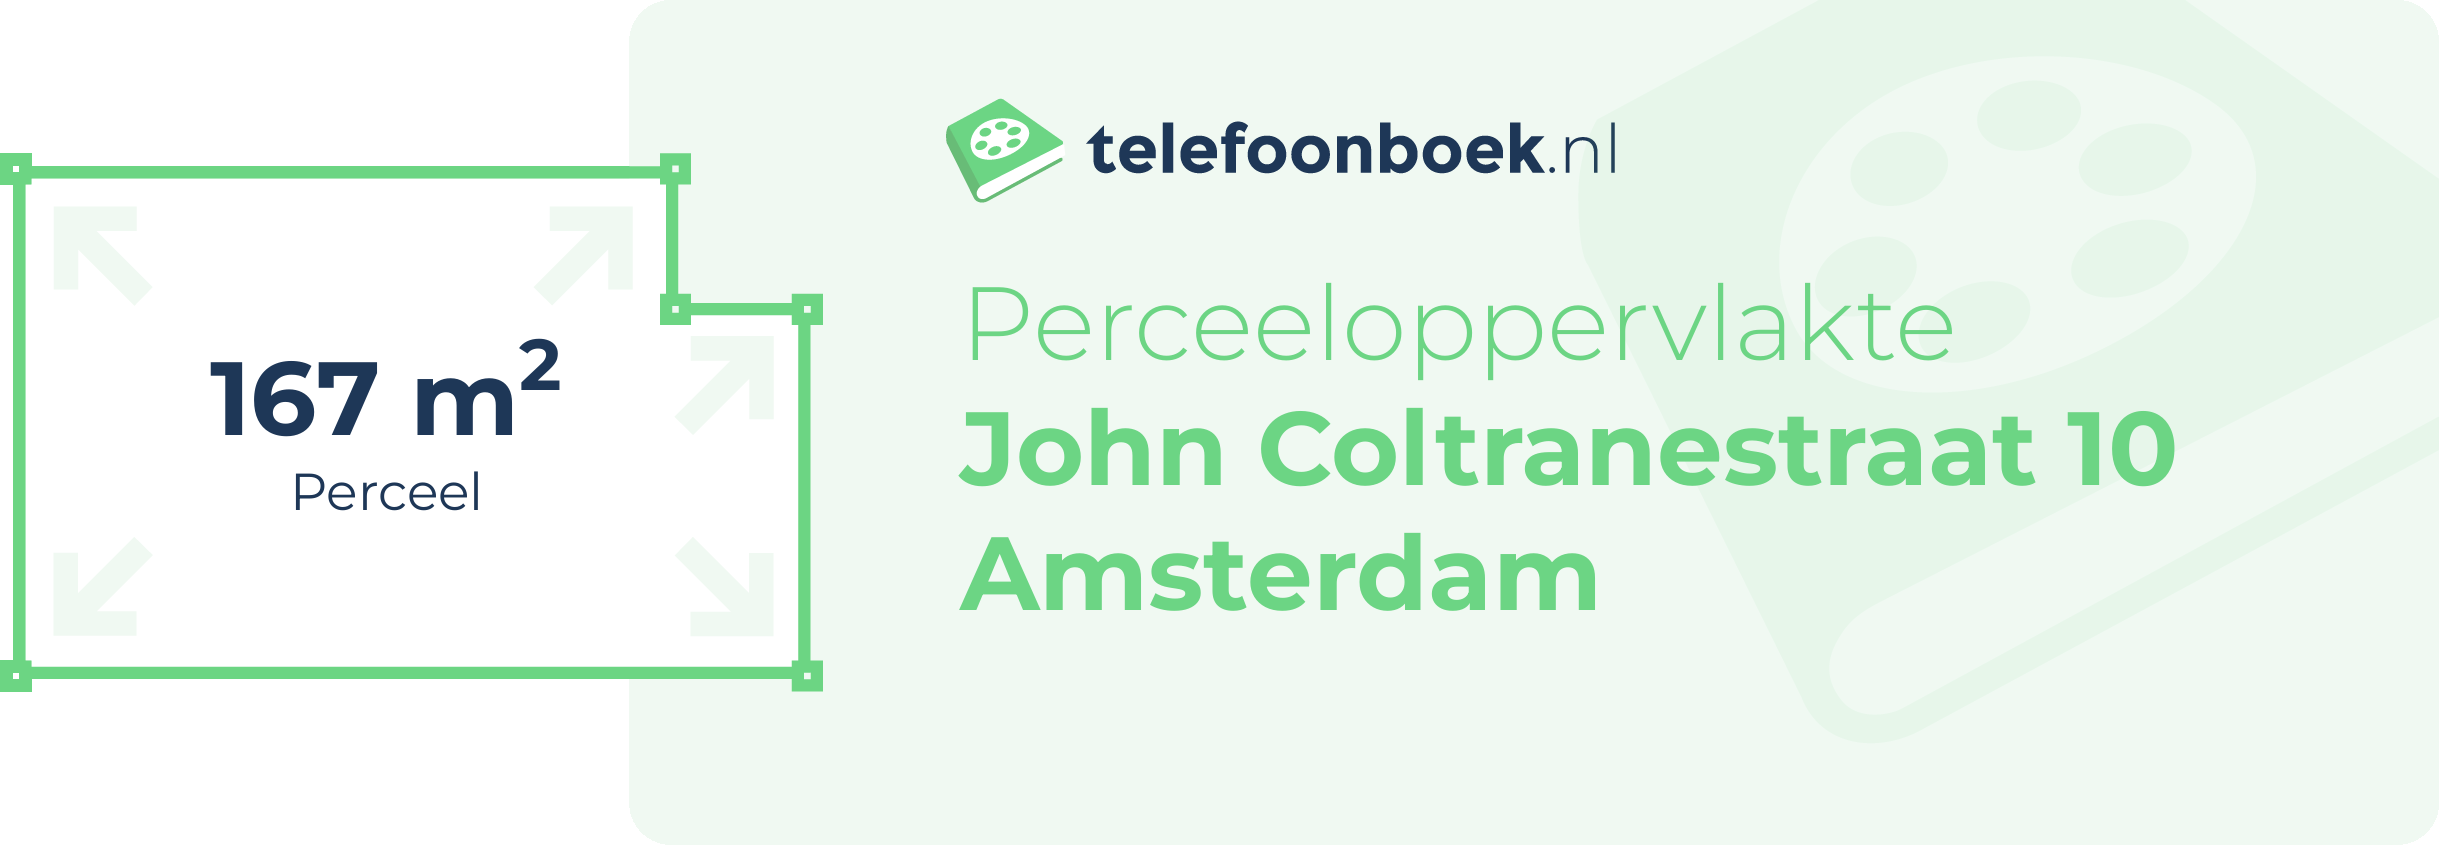 Perceeloppervlakte John Coltranestraat 10 Amsterdam